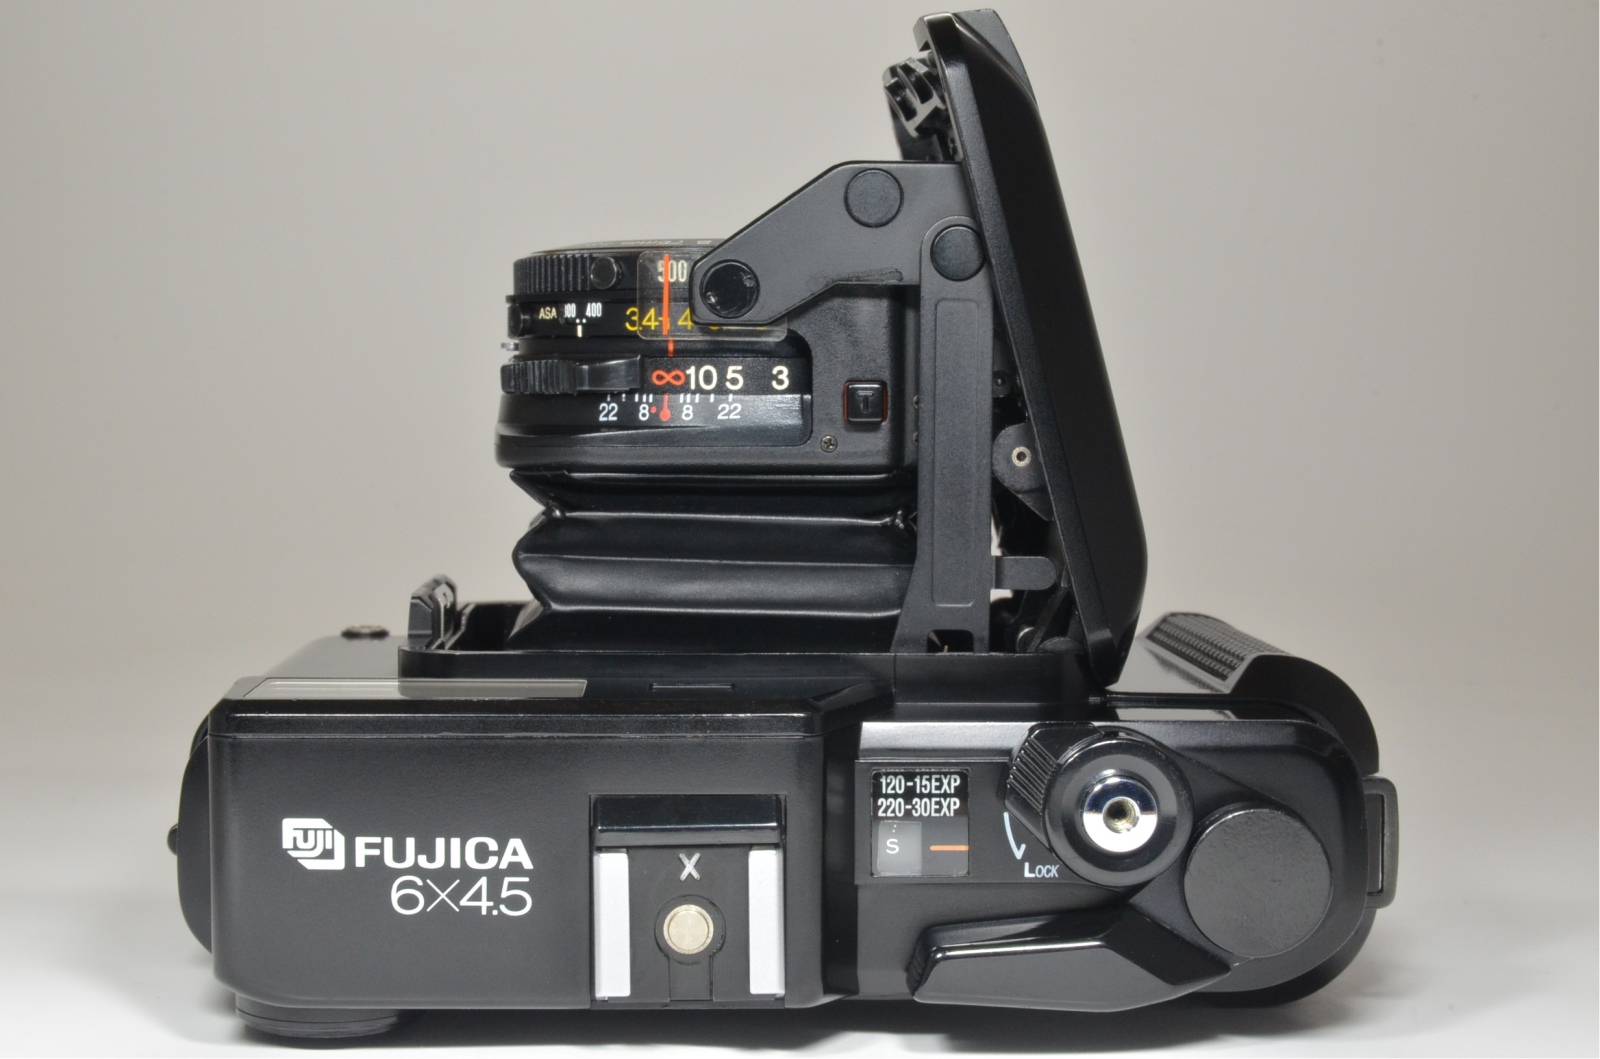 fujifilm fujica gs645 film camera 75mm f3.4 from japan